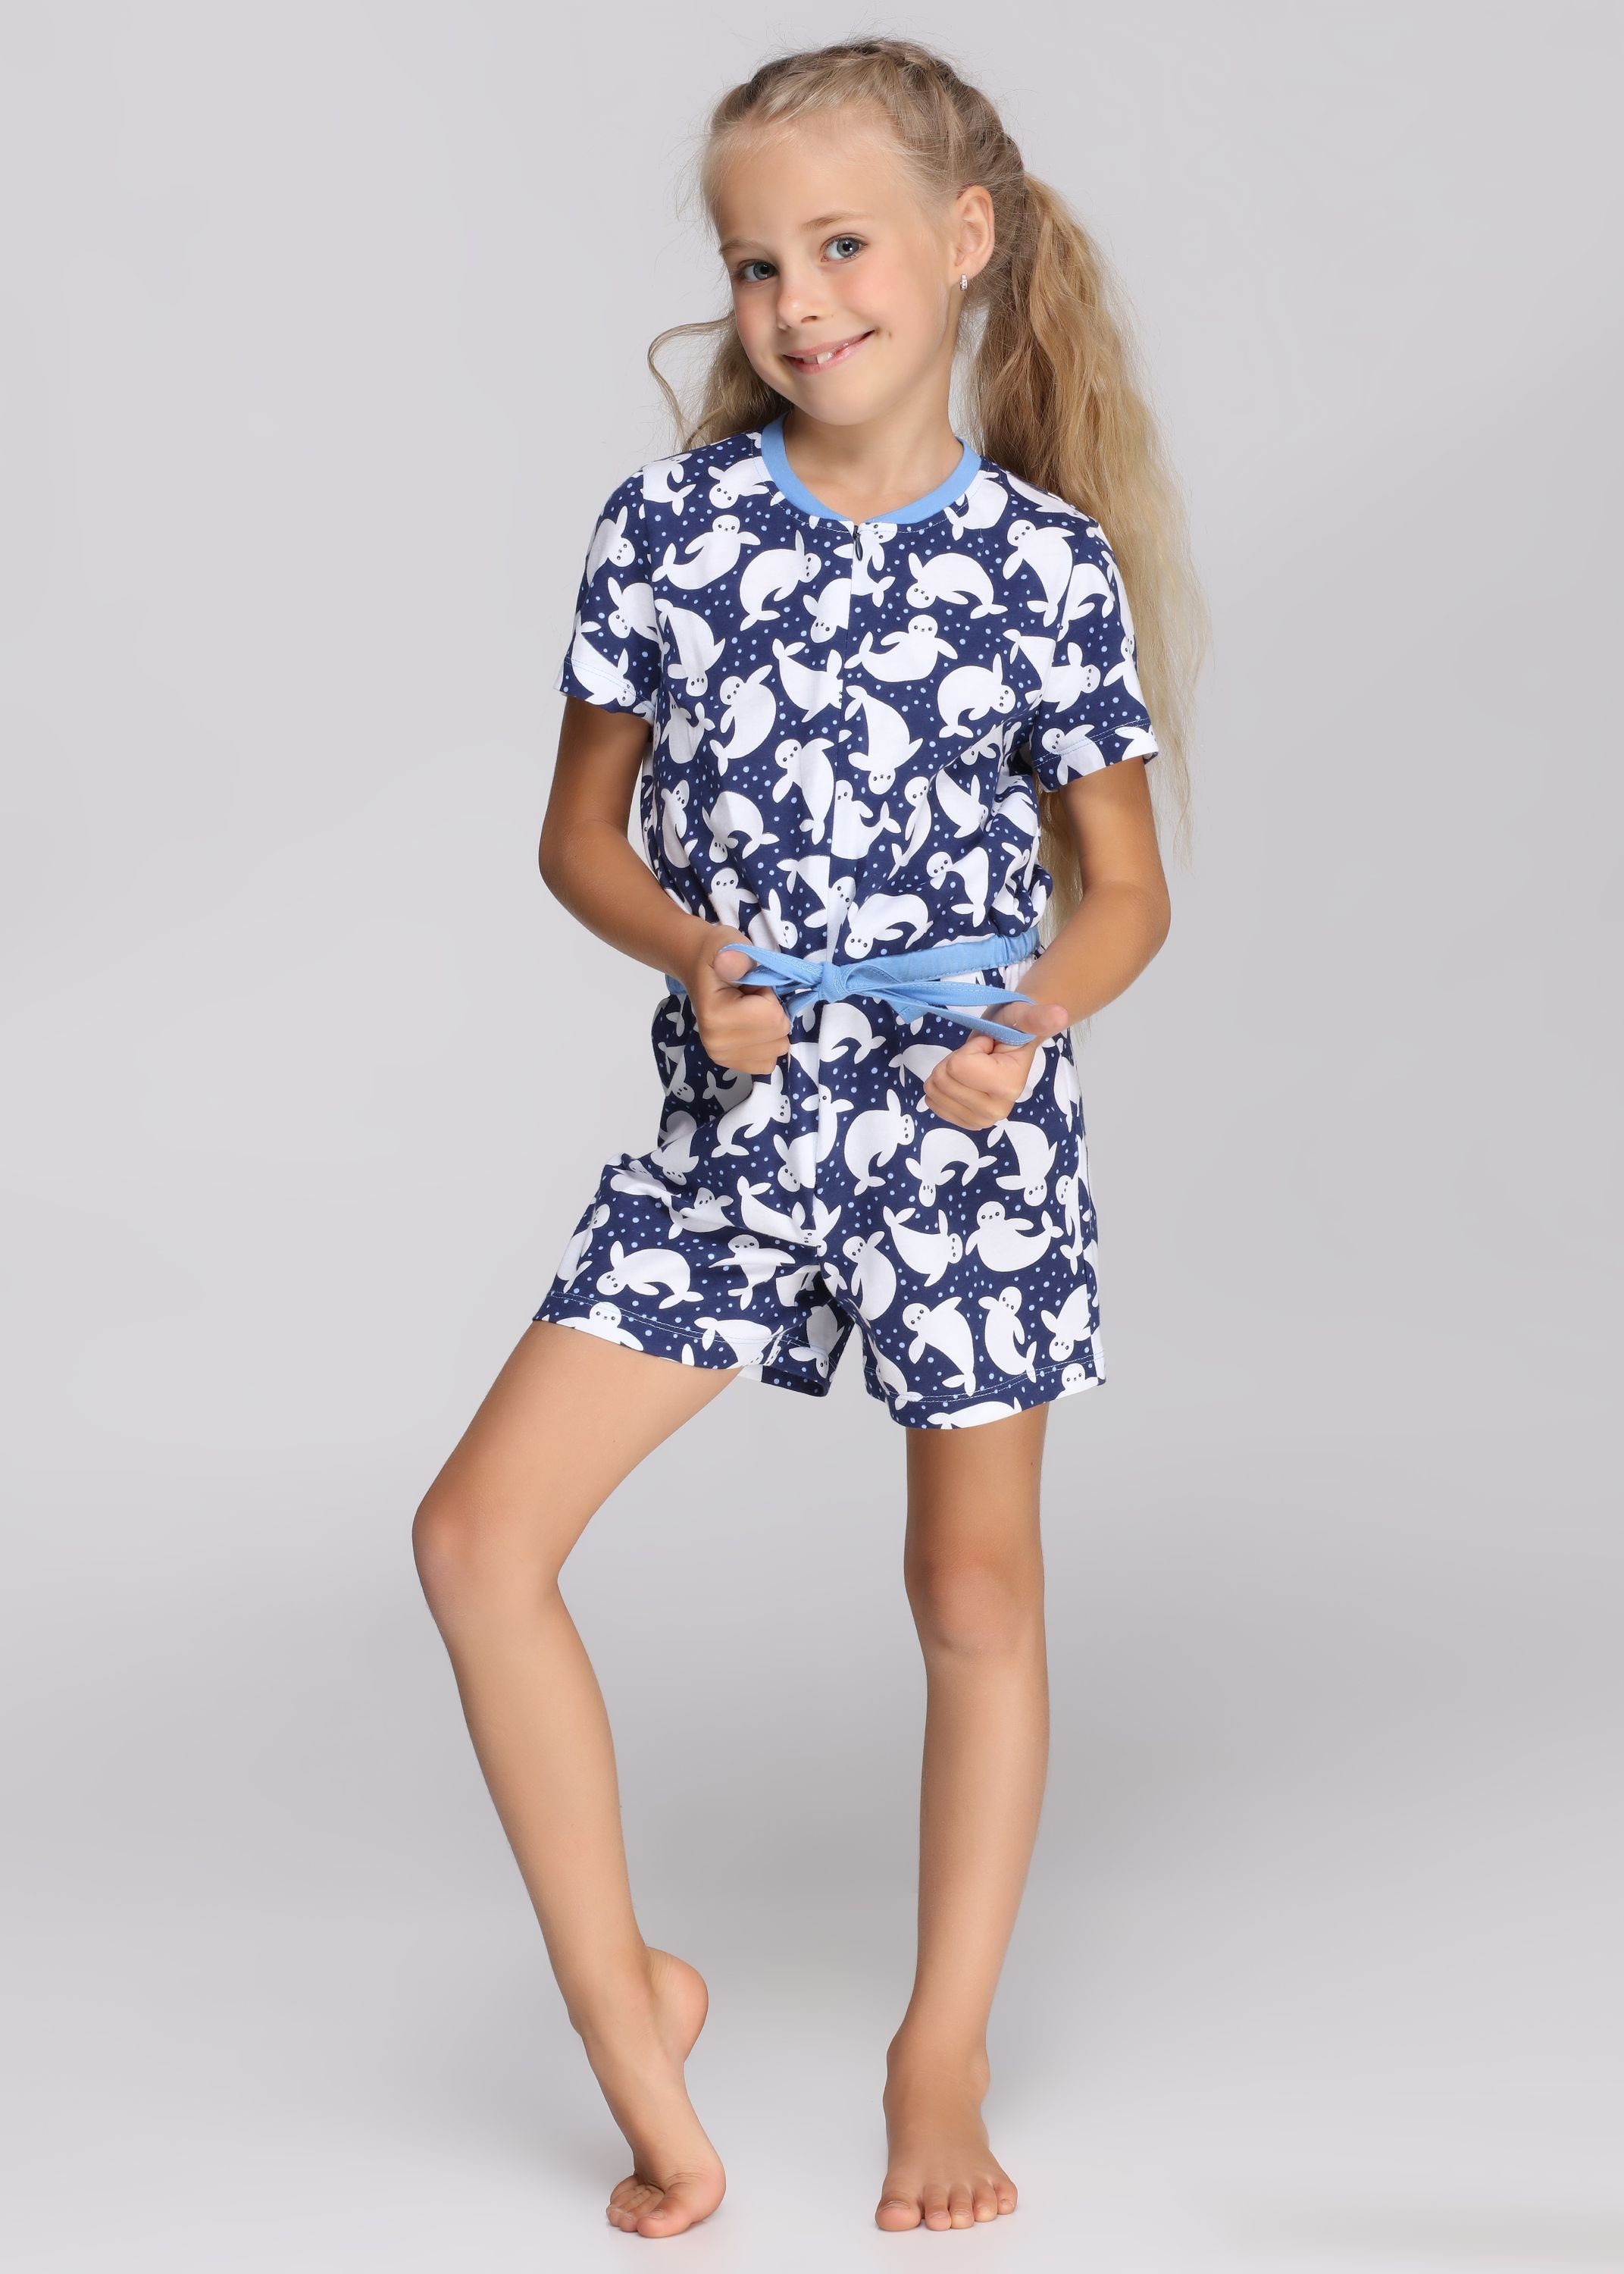 Mädchen Merry Short Overall MS10-267 Schlafanzug Marine/Punkte Schlafanzug Style